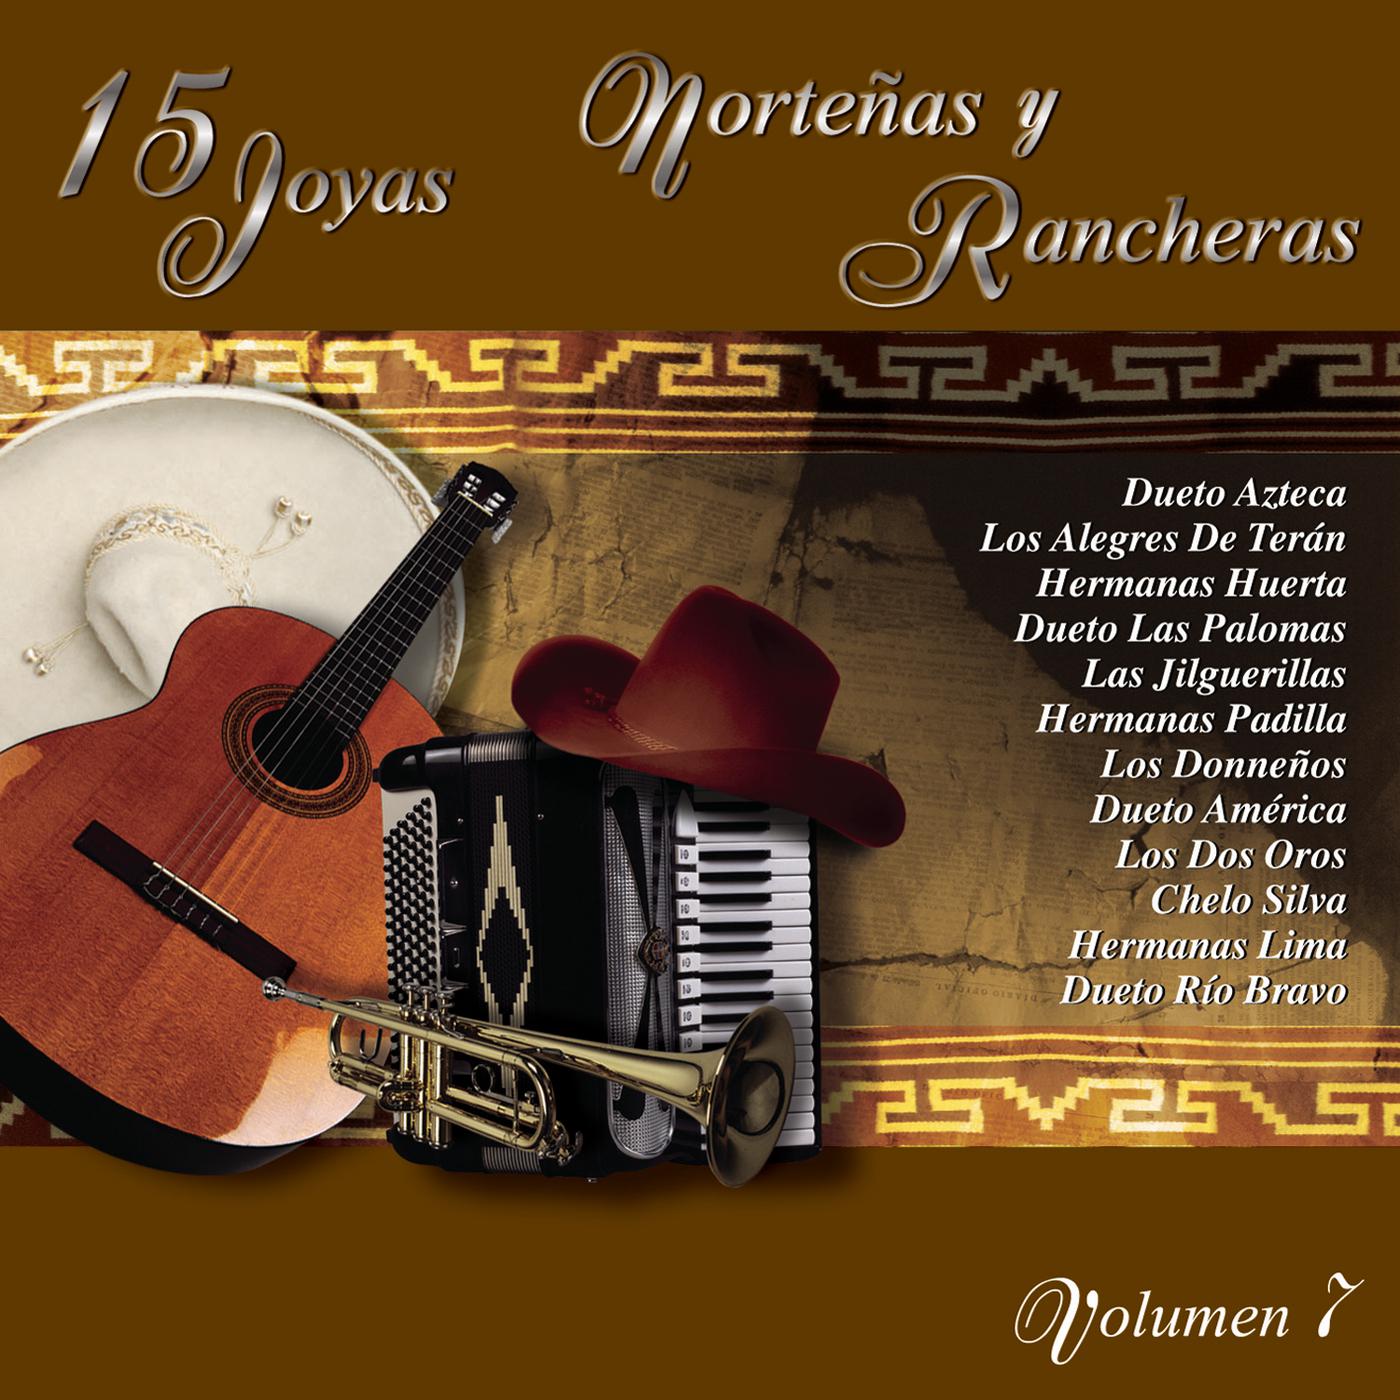 15 Joyas Norte as y Rancheras, Vol. 7